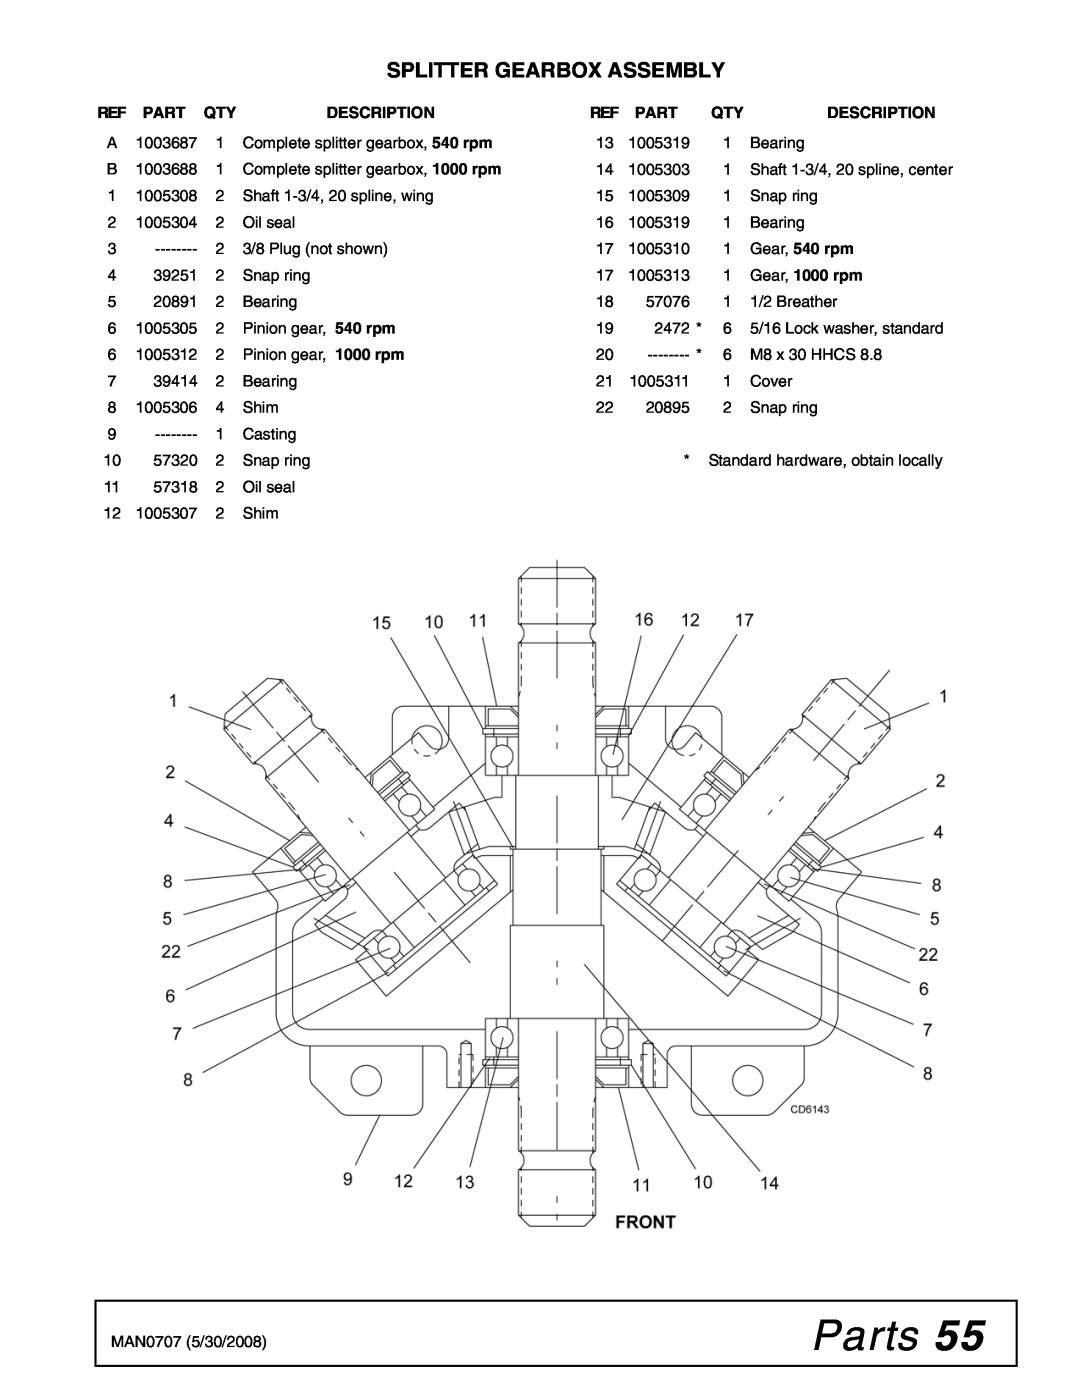 Woods Equipment BW180-3, BW180Q-3, BW126-3 Parts, Splitter Gearbox Assembly, Description, Gear, 540 rpm, Gear, 1000 rpm 